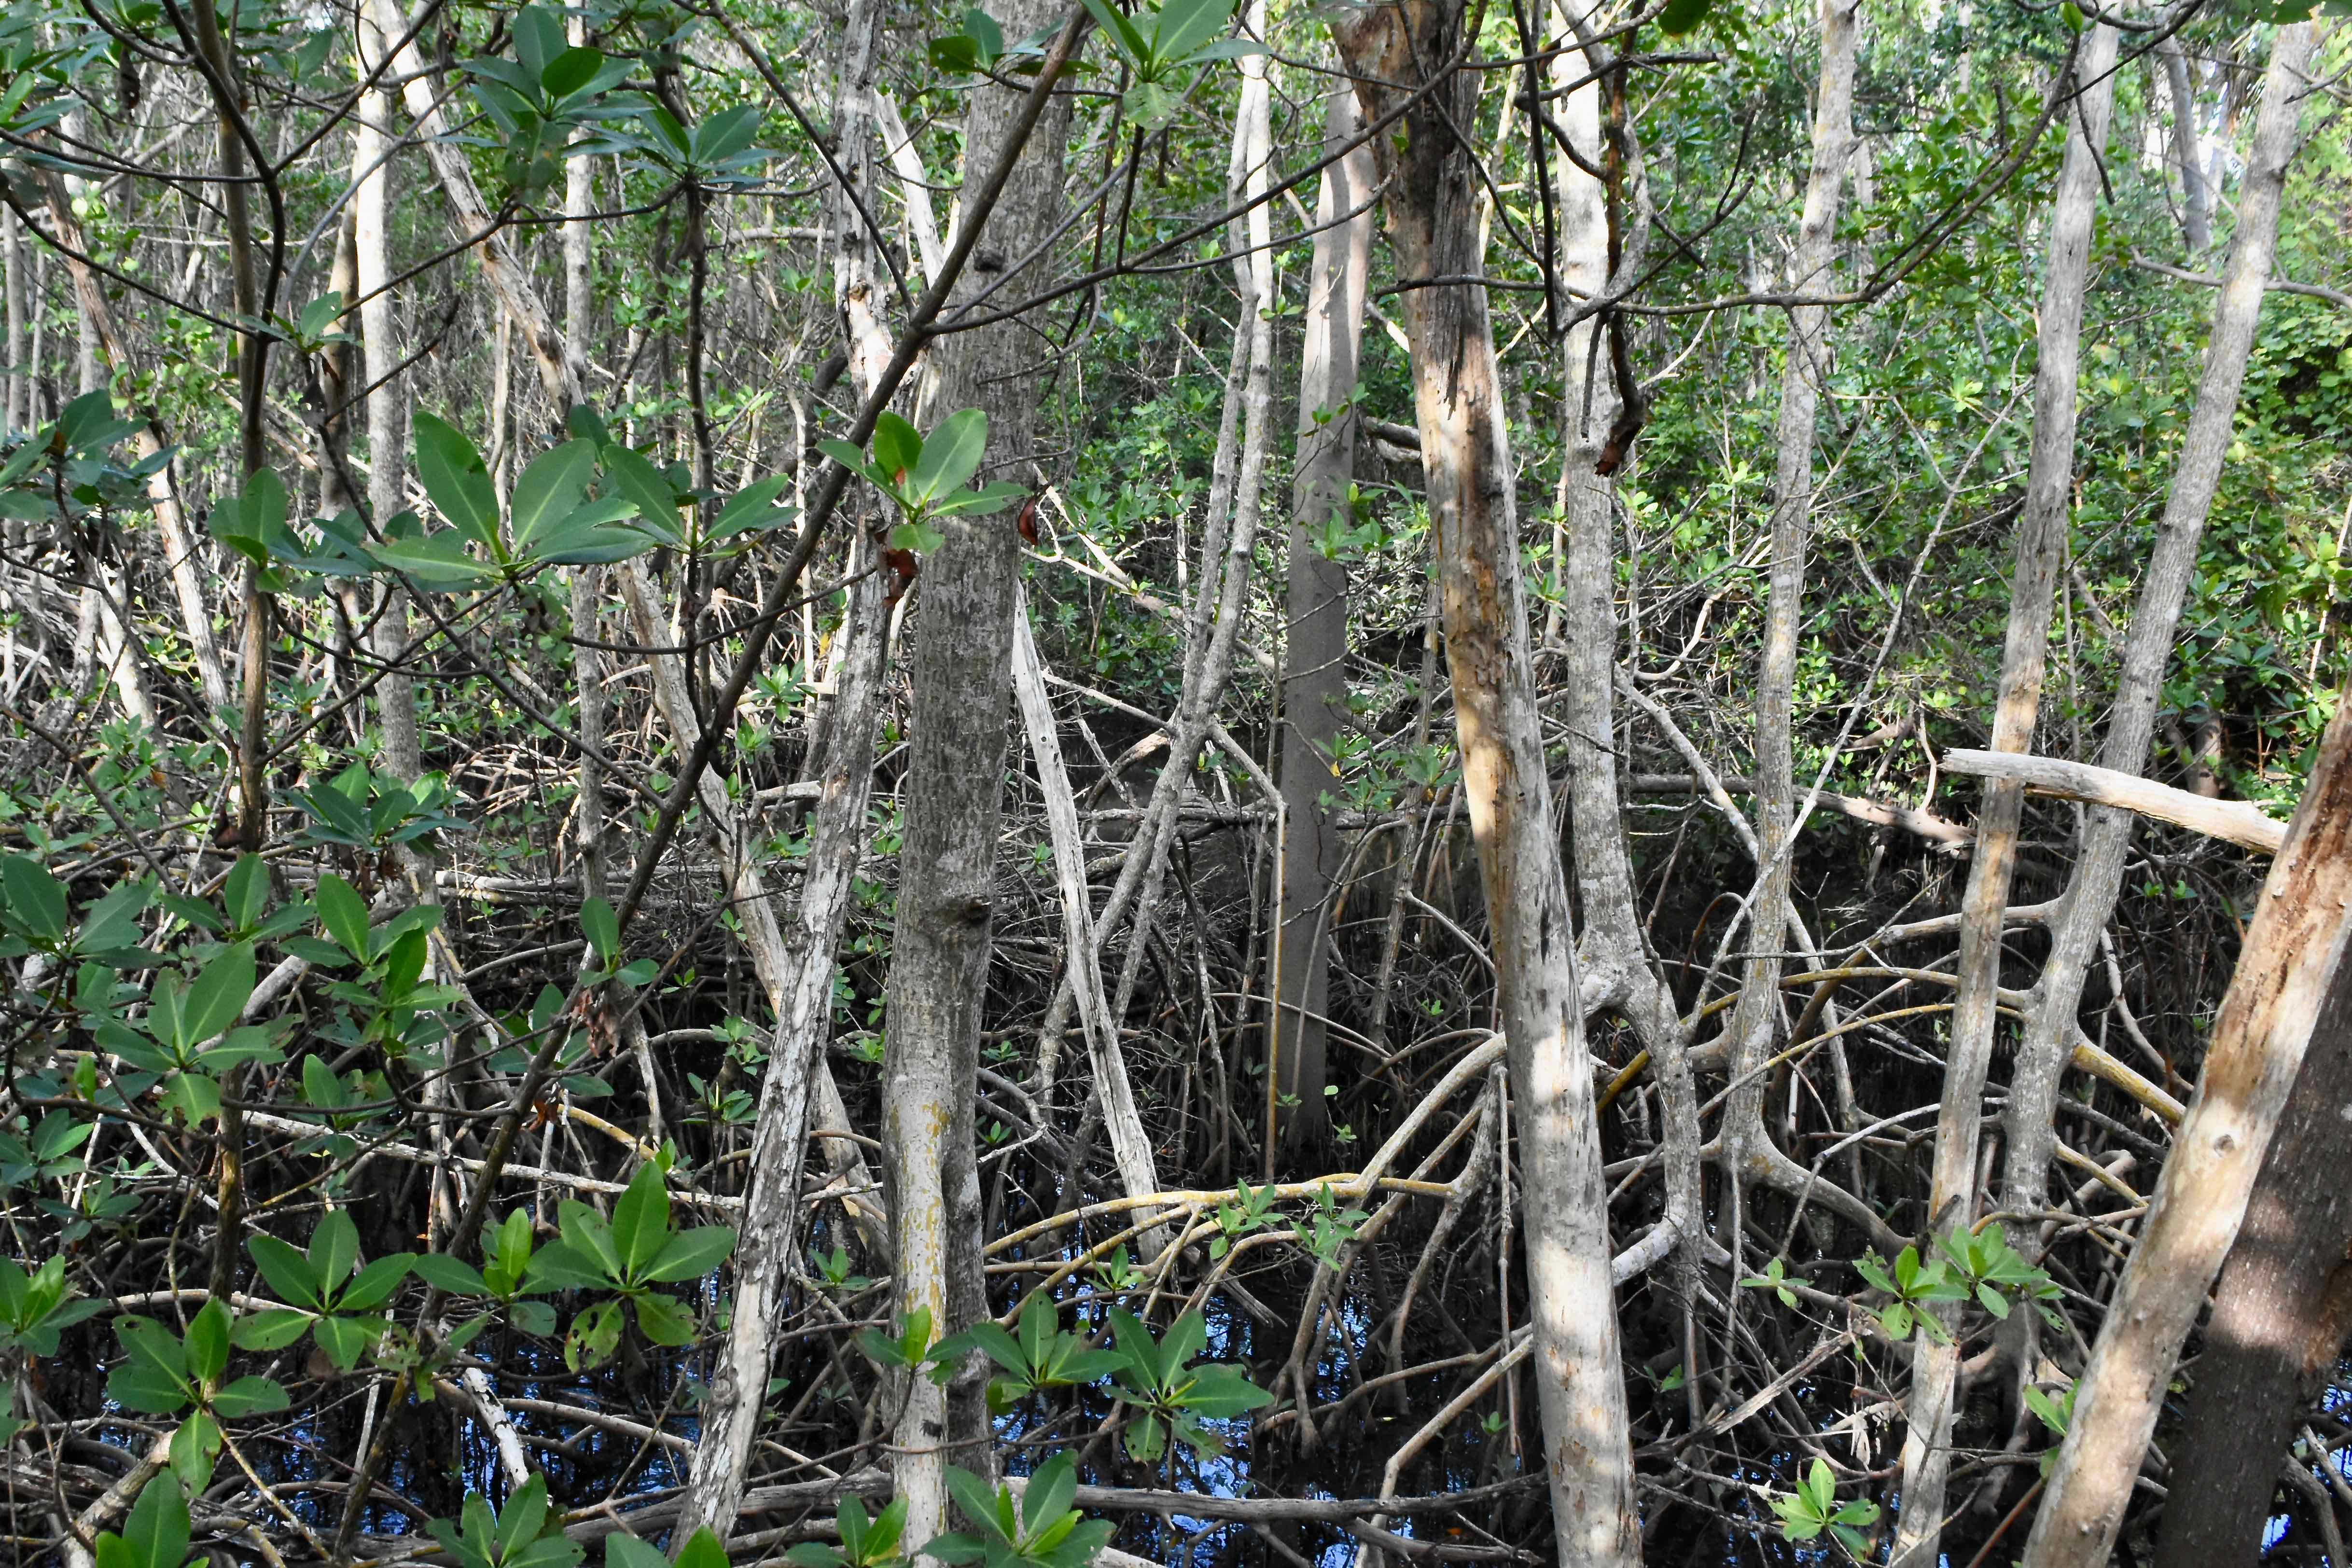 red mangroves